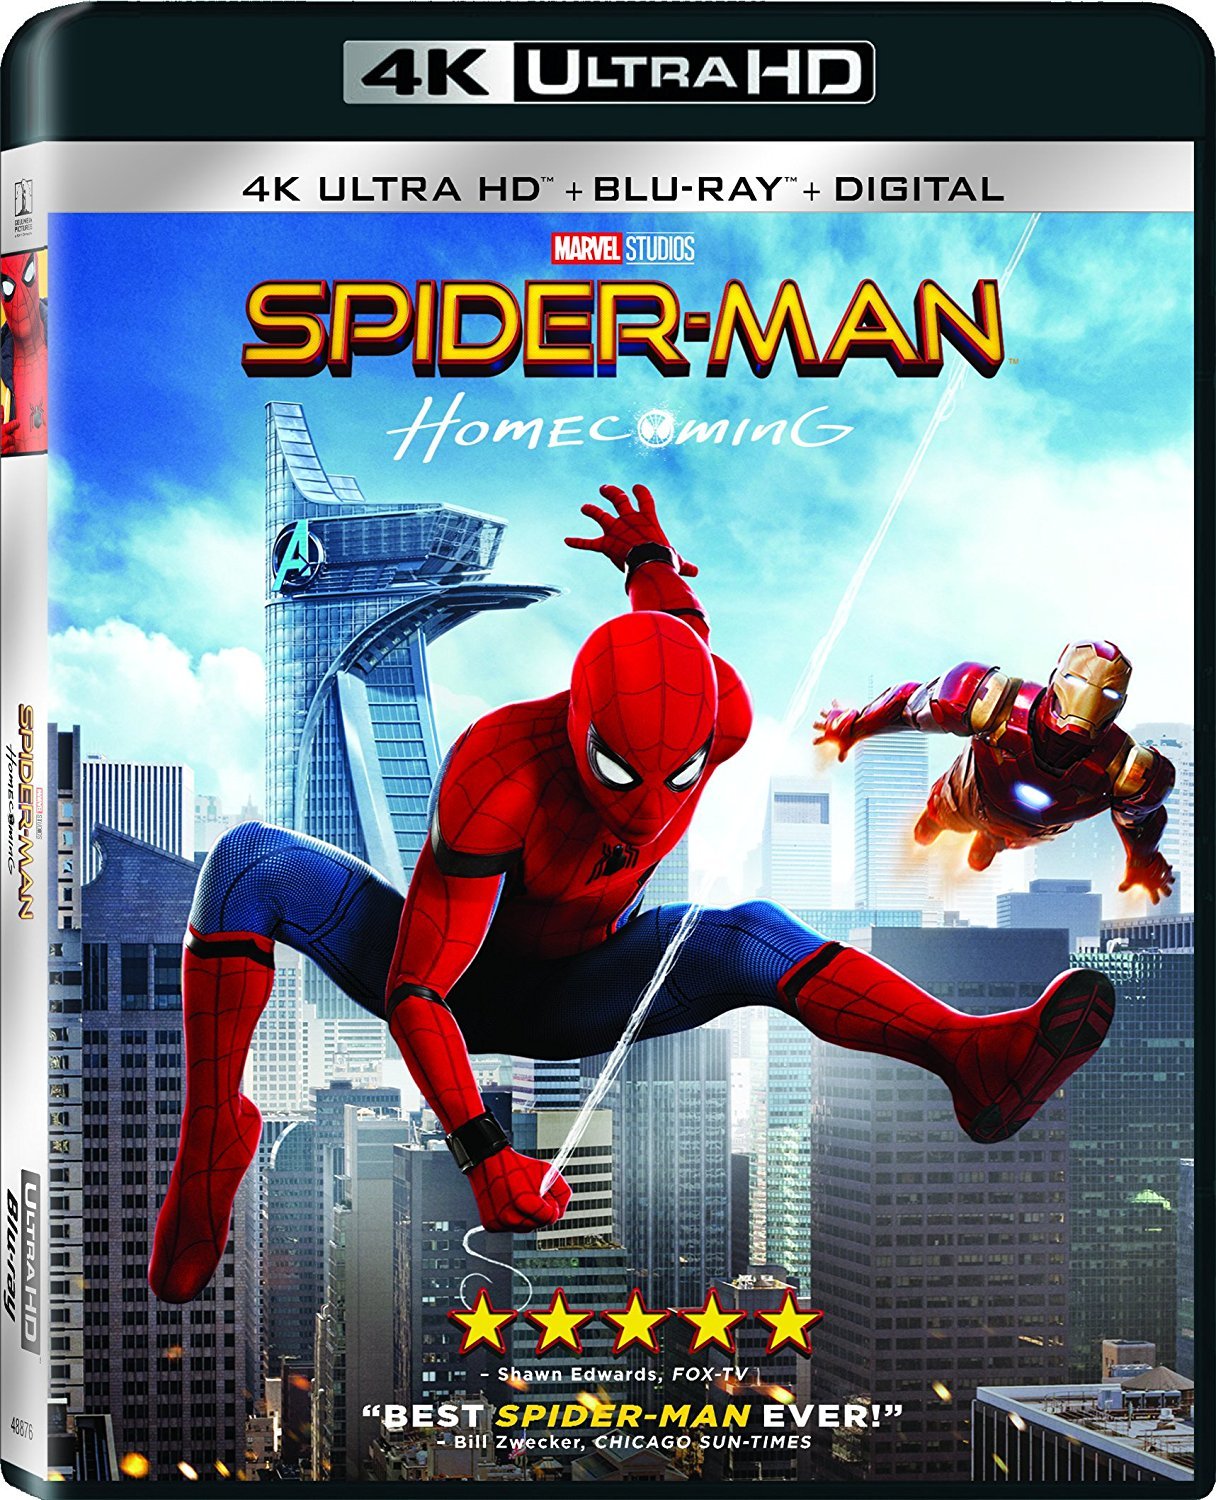 蜘蛛侠: 英雄归来 [保留dolby vision][次时代国语][国配/简/繁/双语特效字幕] Spider-Man.Homecoming.2017.2160p.UHD.Blu-Ray.HEVC.Atmos.TrueHD.7.1-CMCT    [61.64 GB]-1.jpg